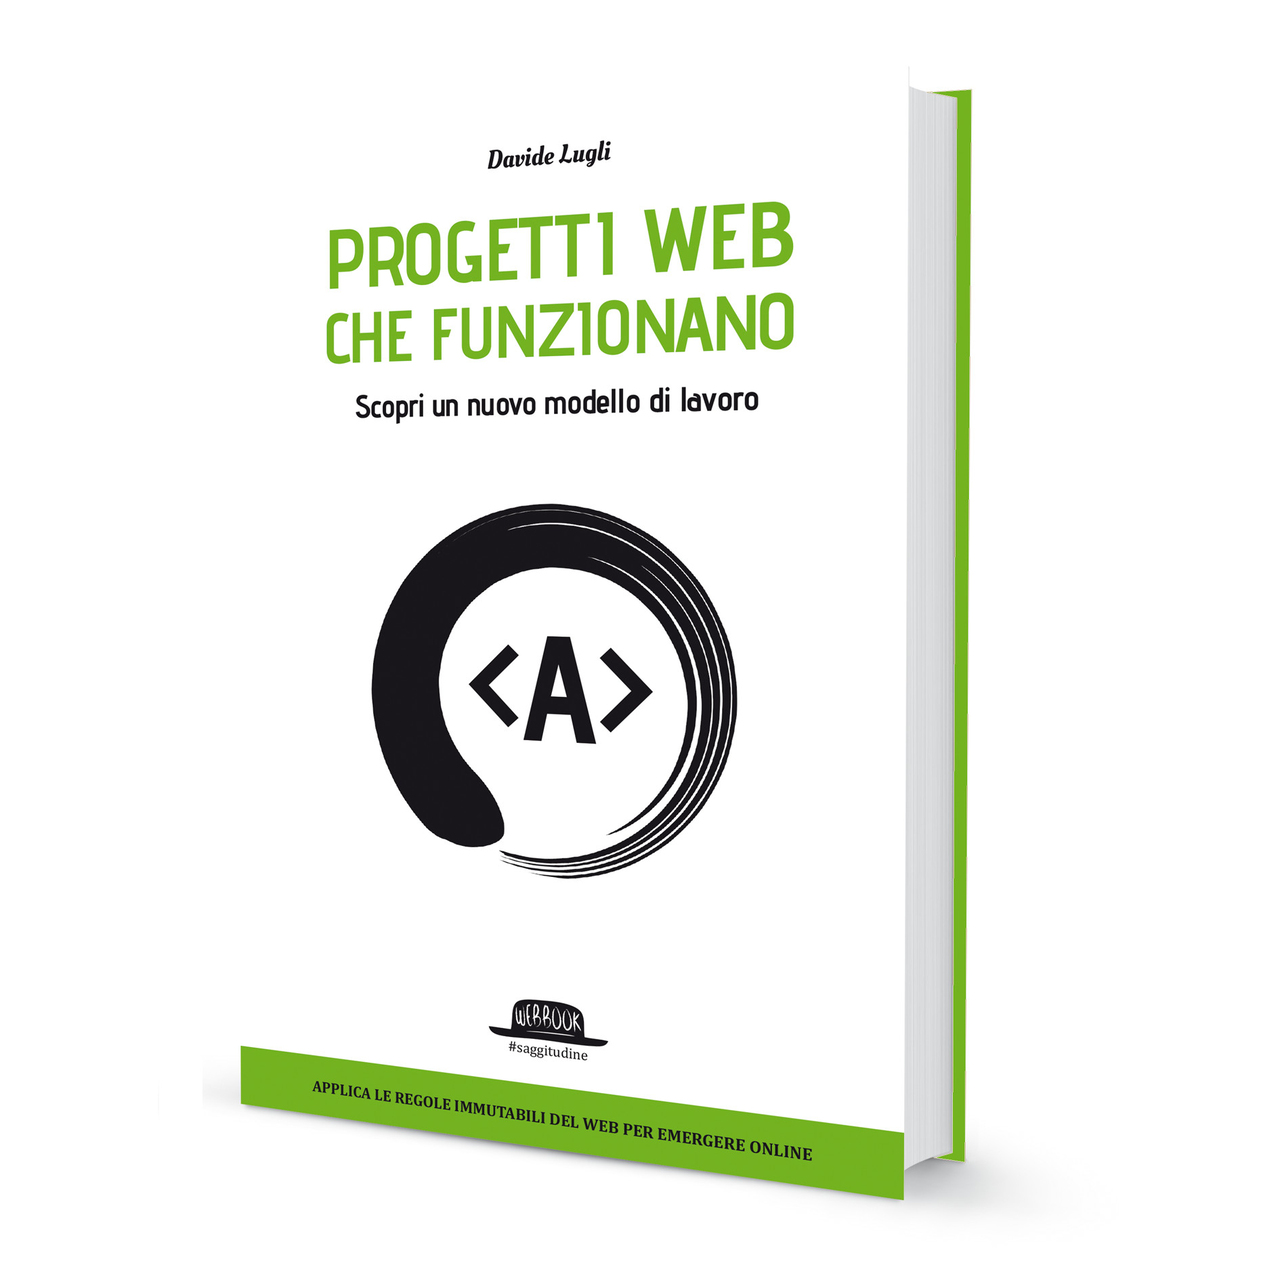 Davide Lugli: in 2018 was Davide Lugli de auteur van het boek "Webprojecten die werken", uitgegeven door Dario Flaccovio Editore uit Palermo